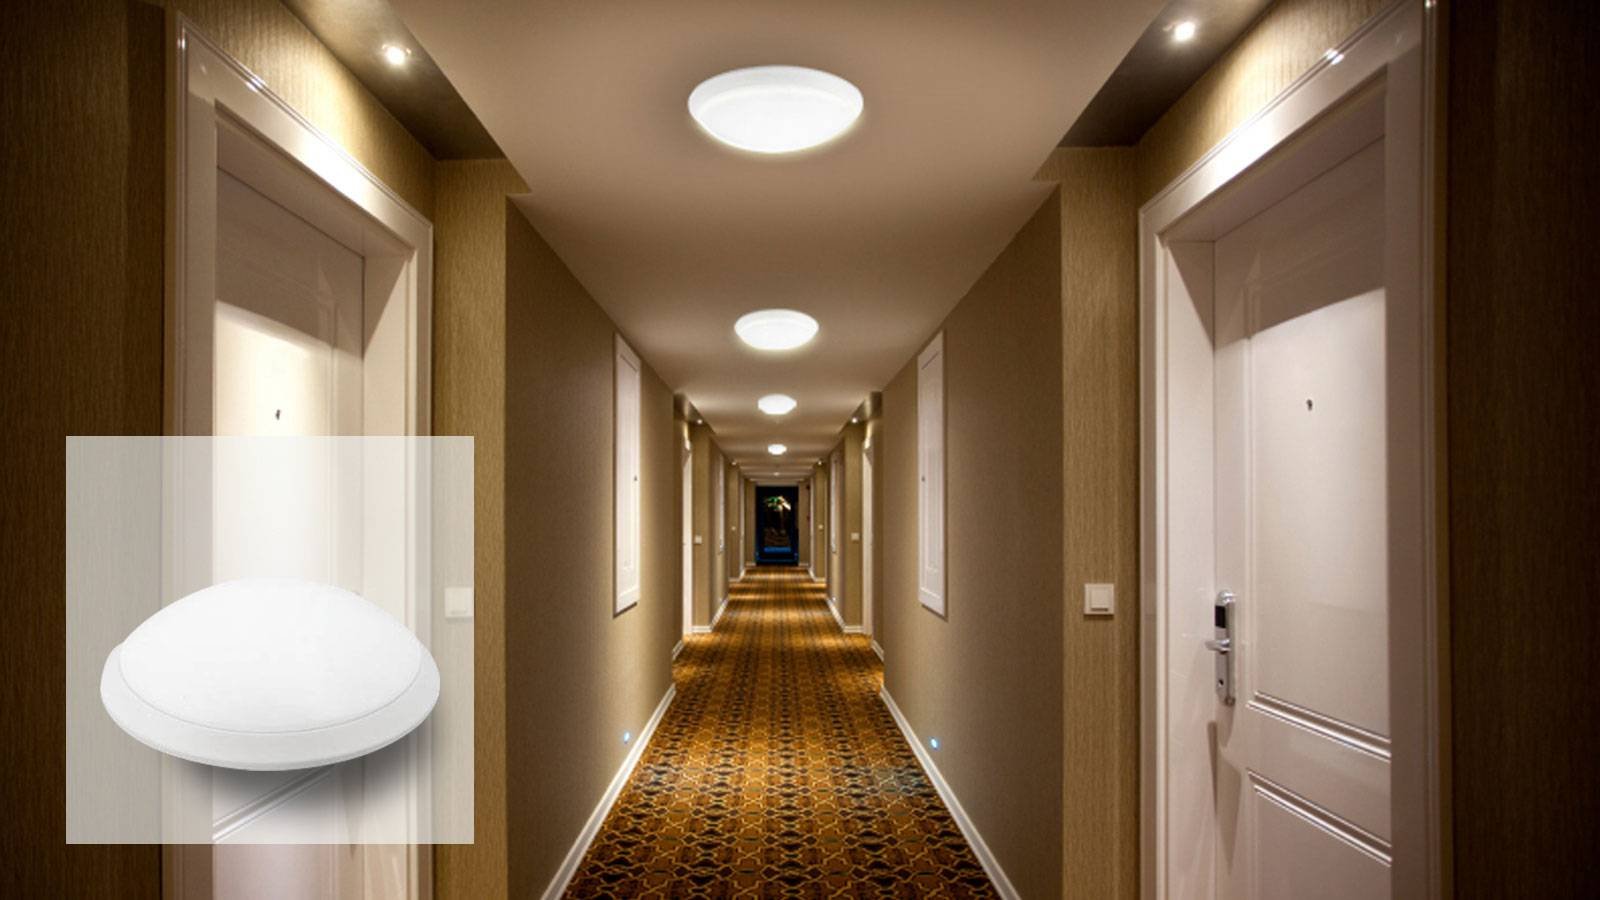 Поставь свет в коридоре. Светильники в коридор. Освещение в коридоре. Освещение в прихожей. Светильники в коридор и прихожую.